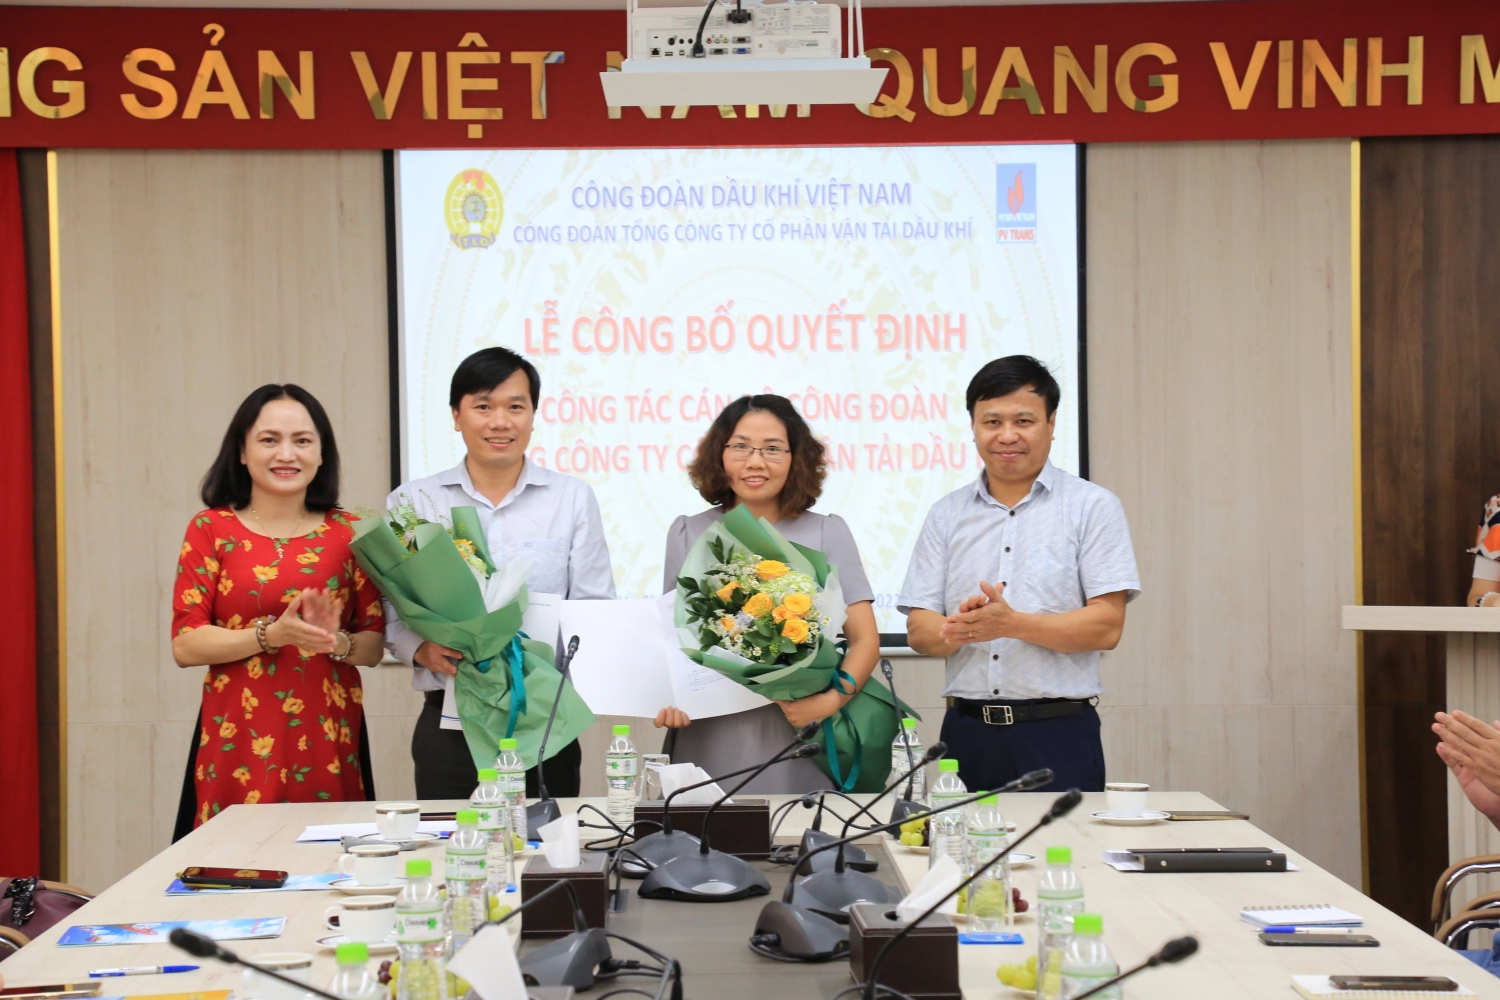 ồng chí Trần Chí Thành và đồng chí Phạm Thị Thoa (đứng giữa, từ trái qua) nhận Quyết định công nhận Phó Chủ tịch Công đoàn PVTrans nhiệm kỳ 2018 – 2023.